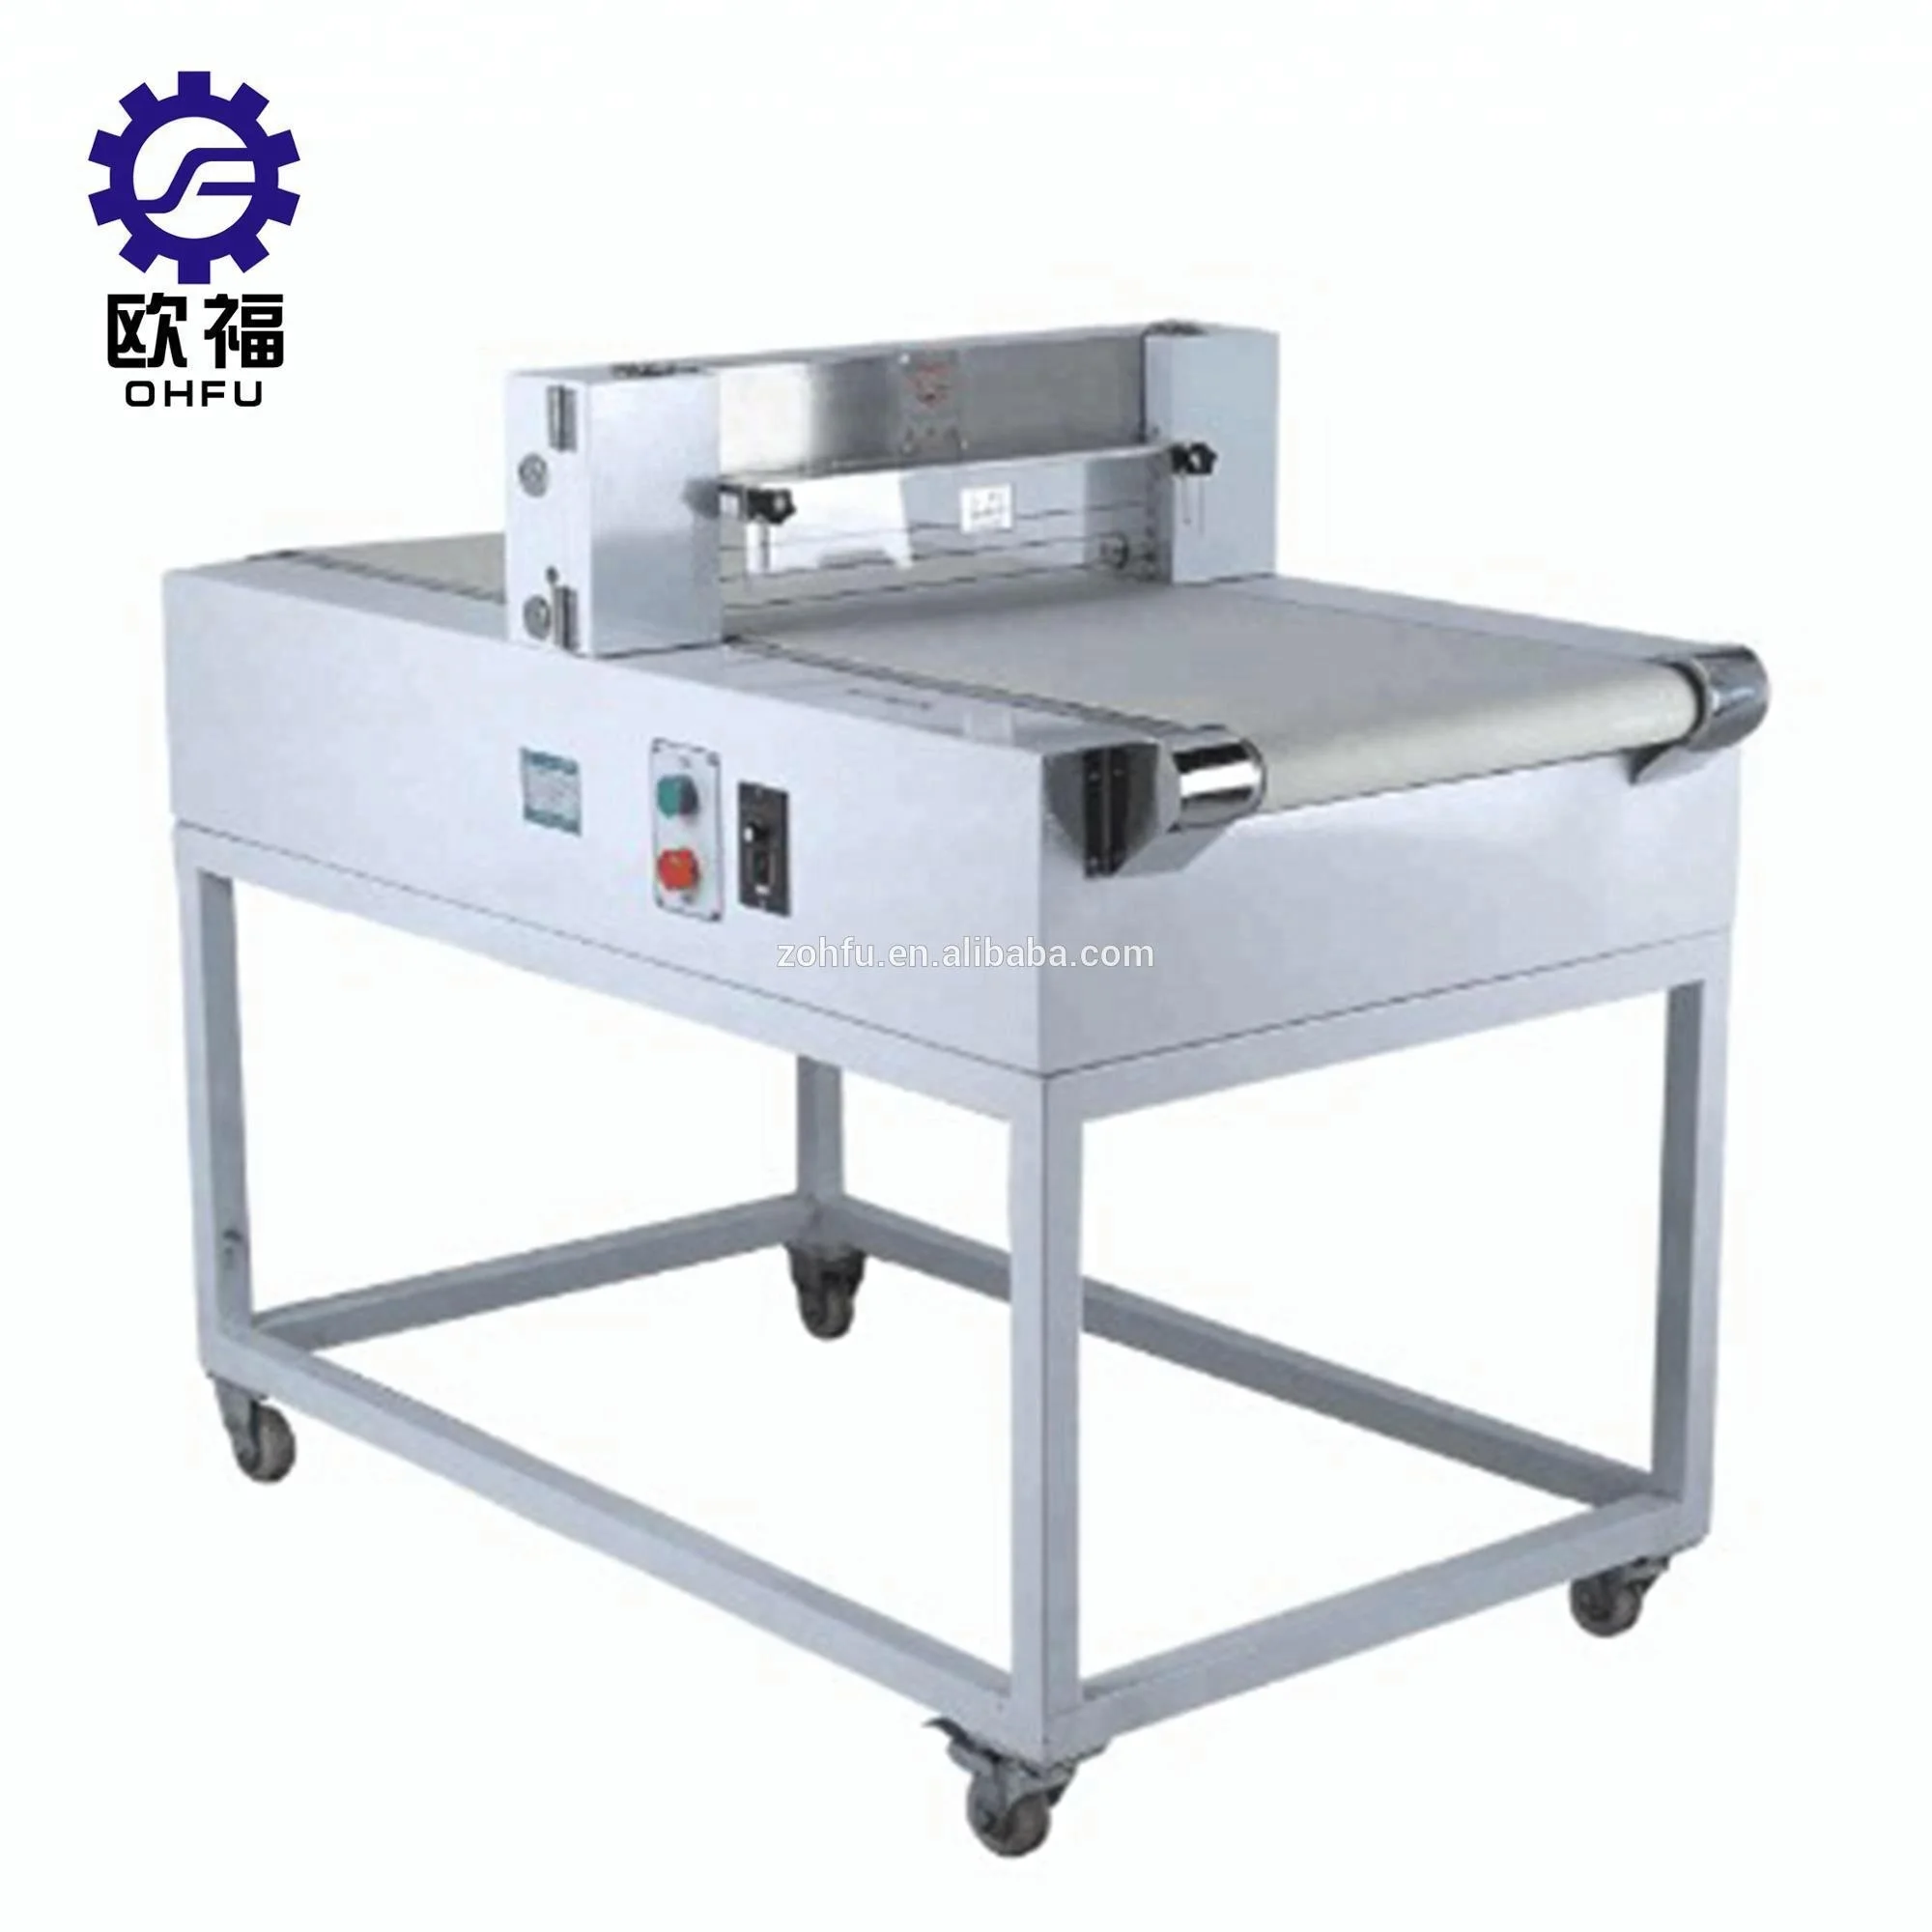 China Cake Board Machine, Cake Board Machine Manufacturers, Suppliers,  Price | Made-in-China.com